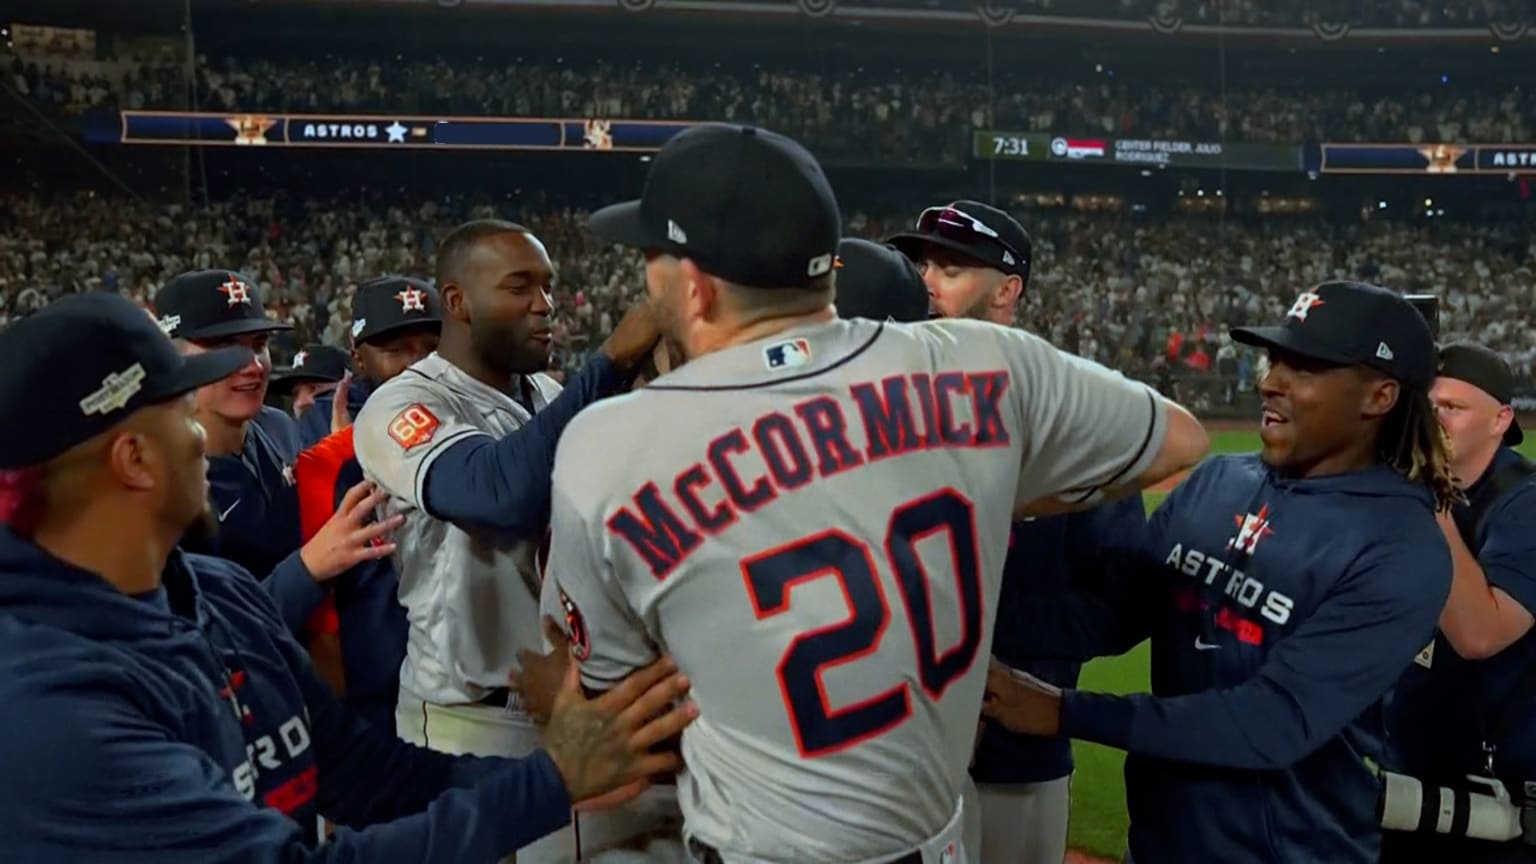 Liga Americana: Astros ganan el primero de la serie ante los Yankees